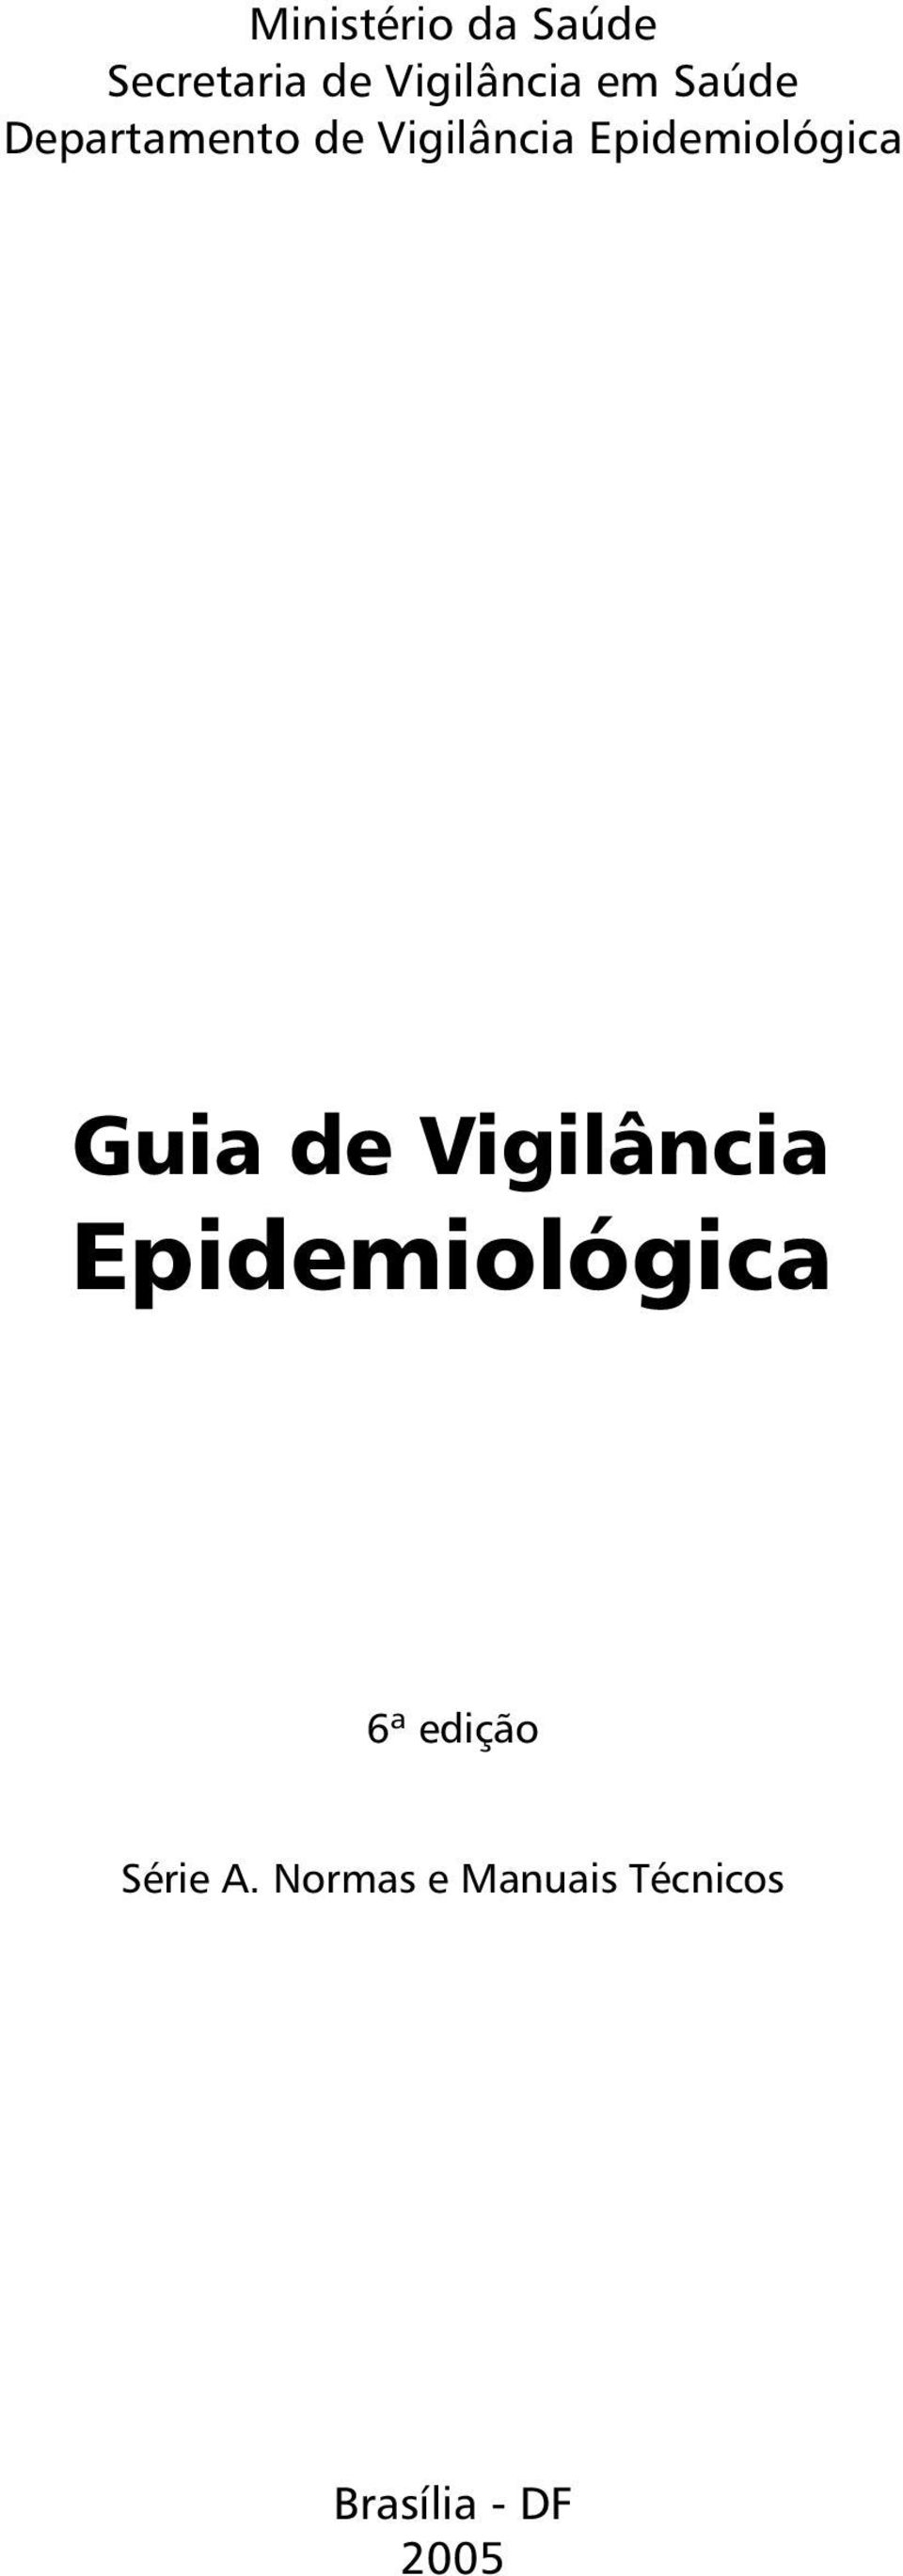 Guia de Vigilância Epidemiológica ª edição